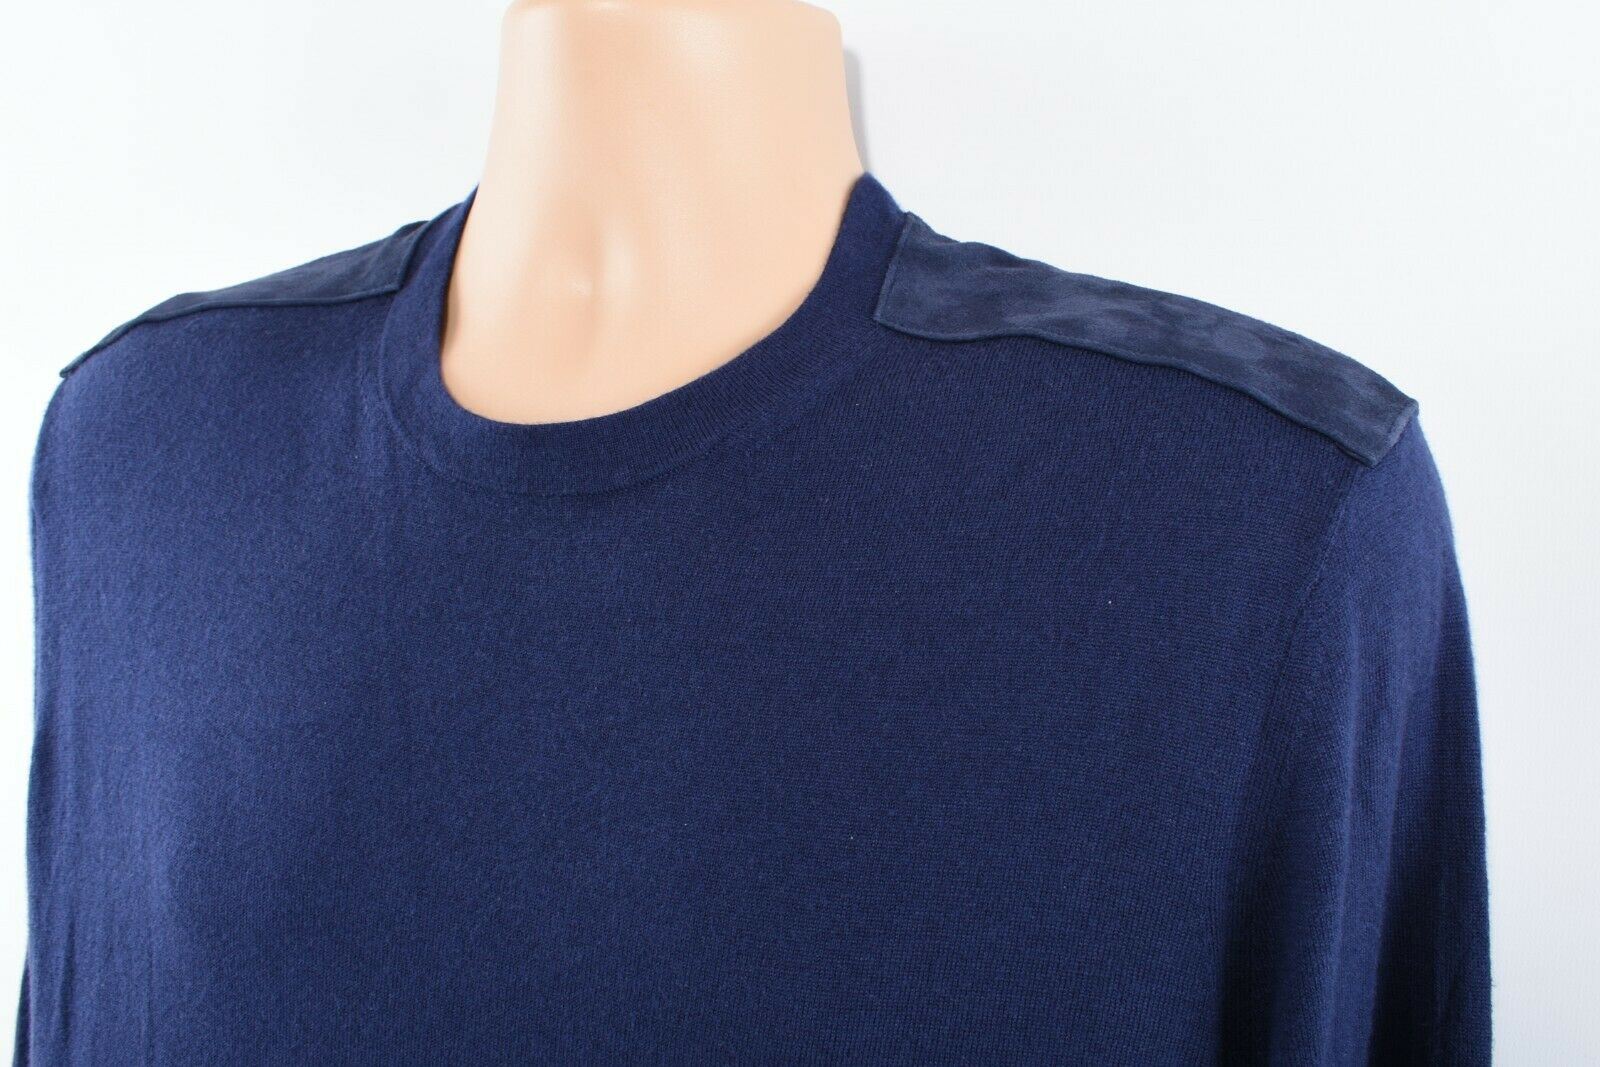 MICHAEL KORS Men's Indigo Blue Lightweight Knit Jumper, size XL